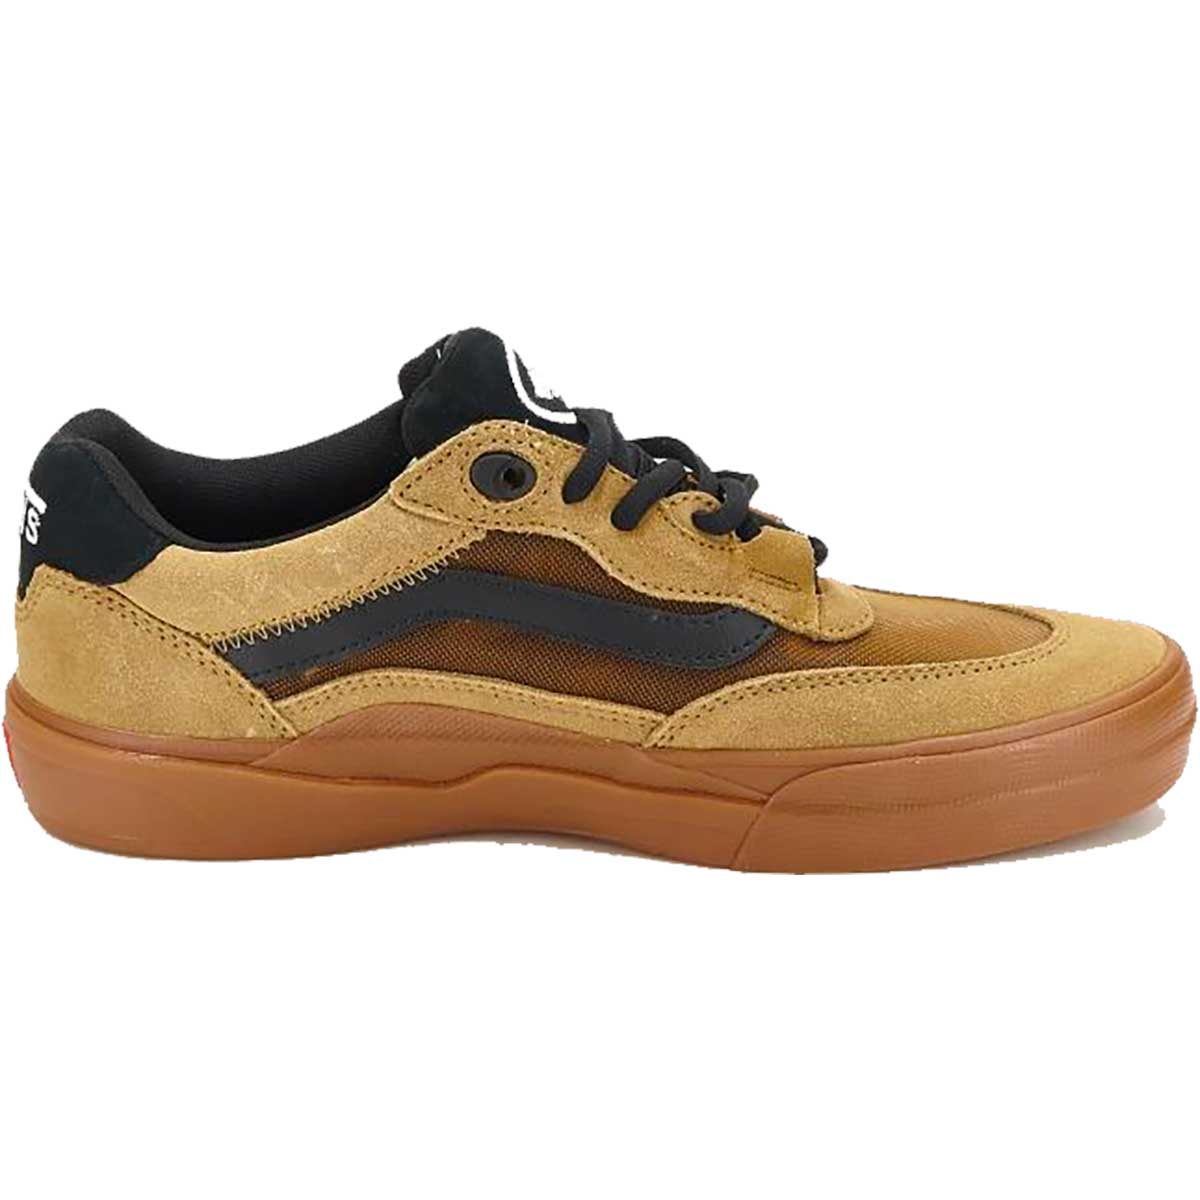 Vans Skate Wayvee Shoes - Tobacco Brown